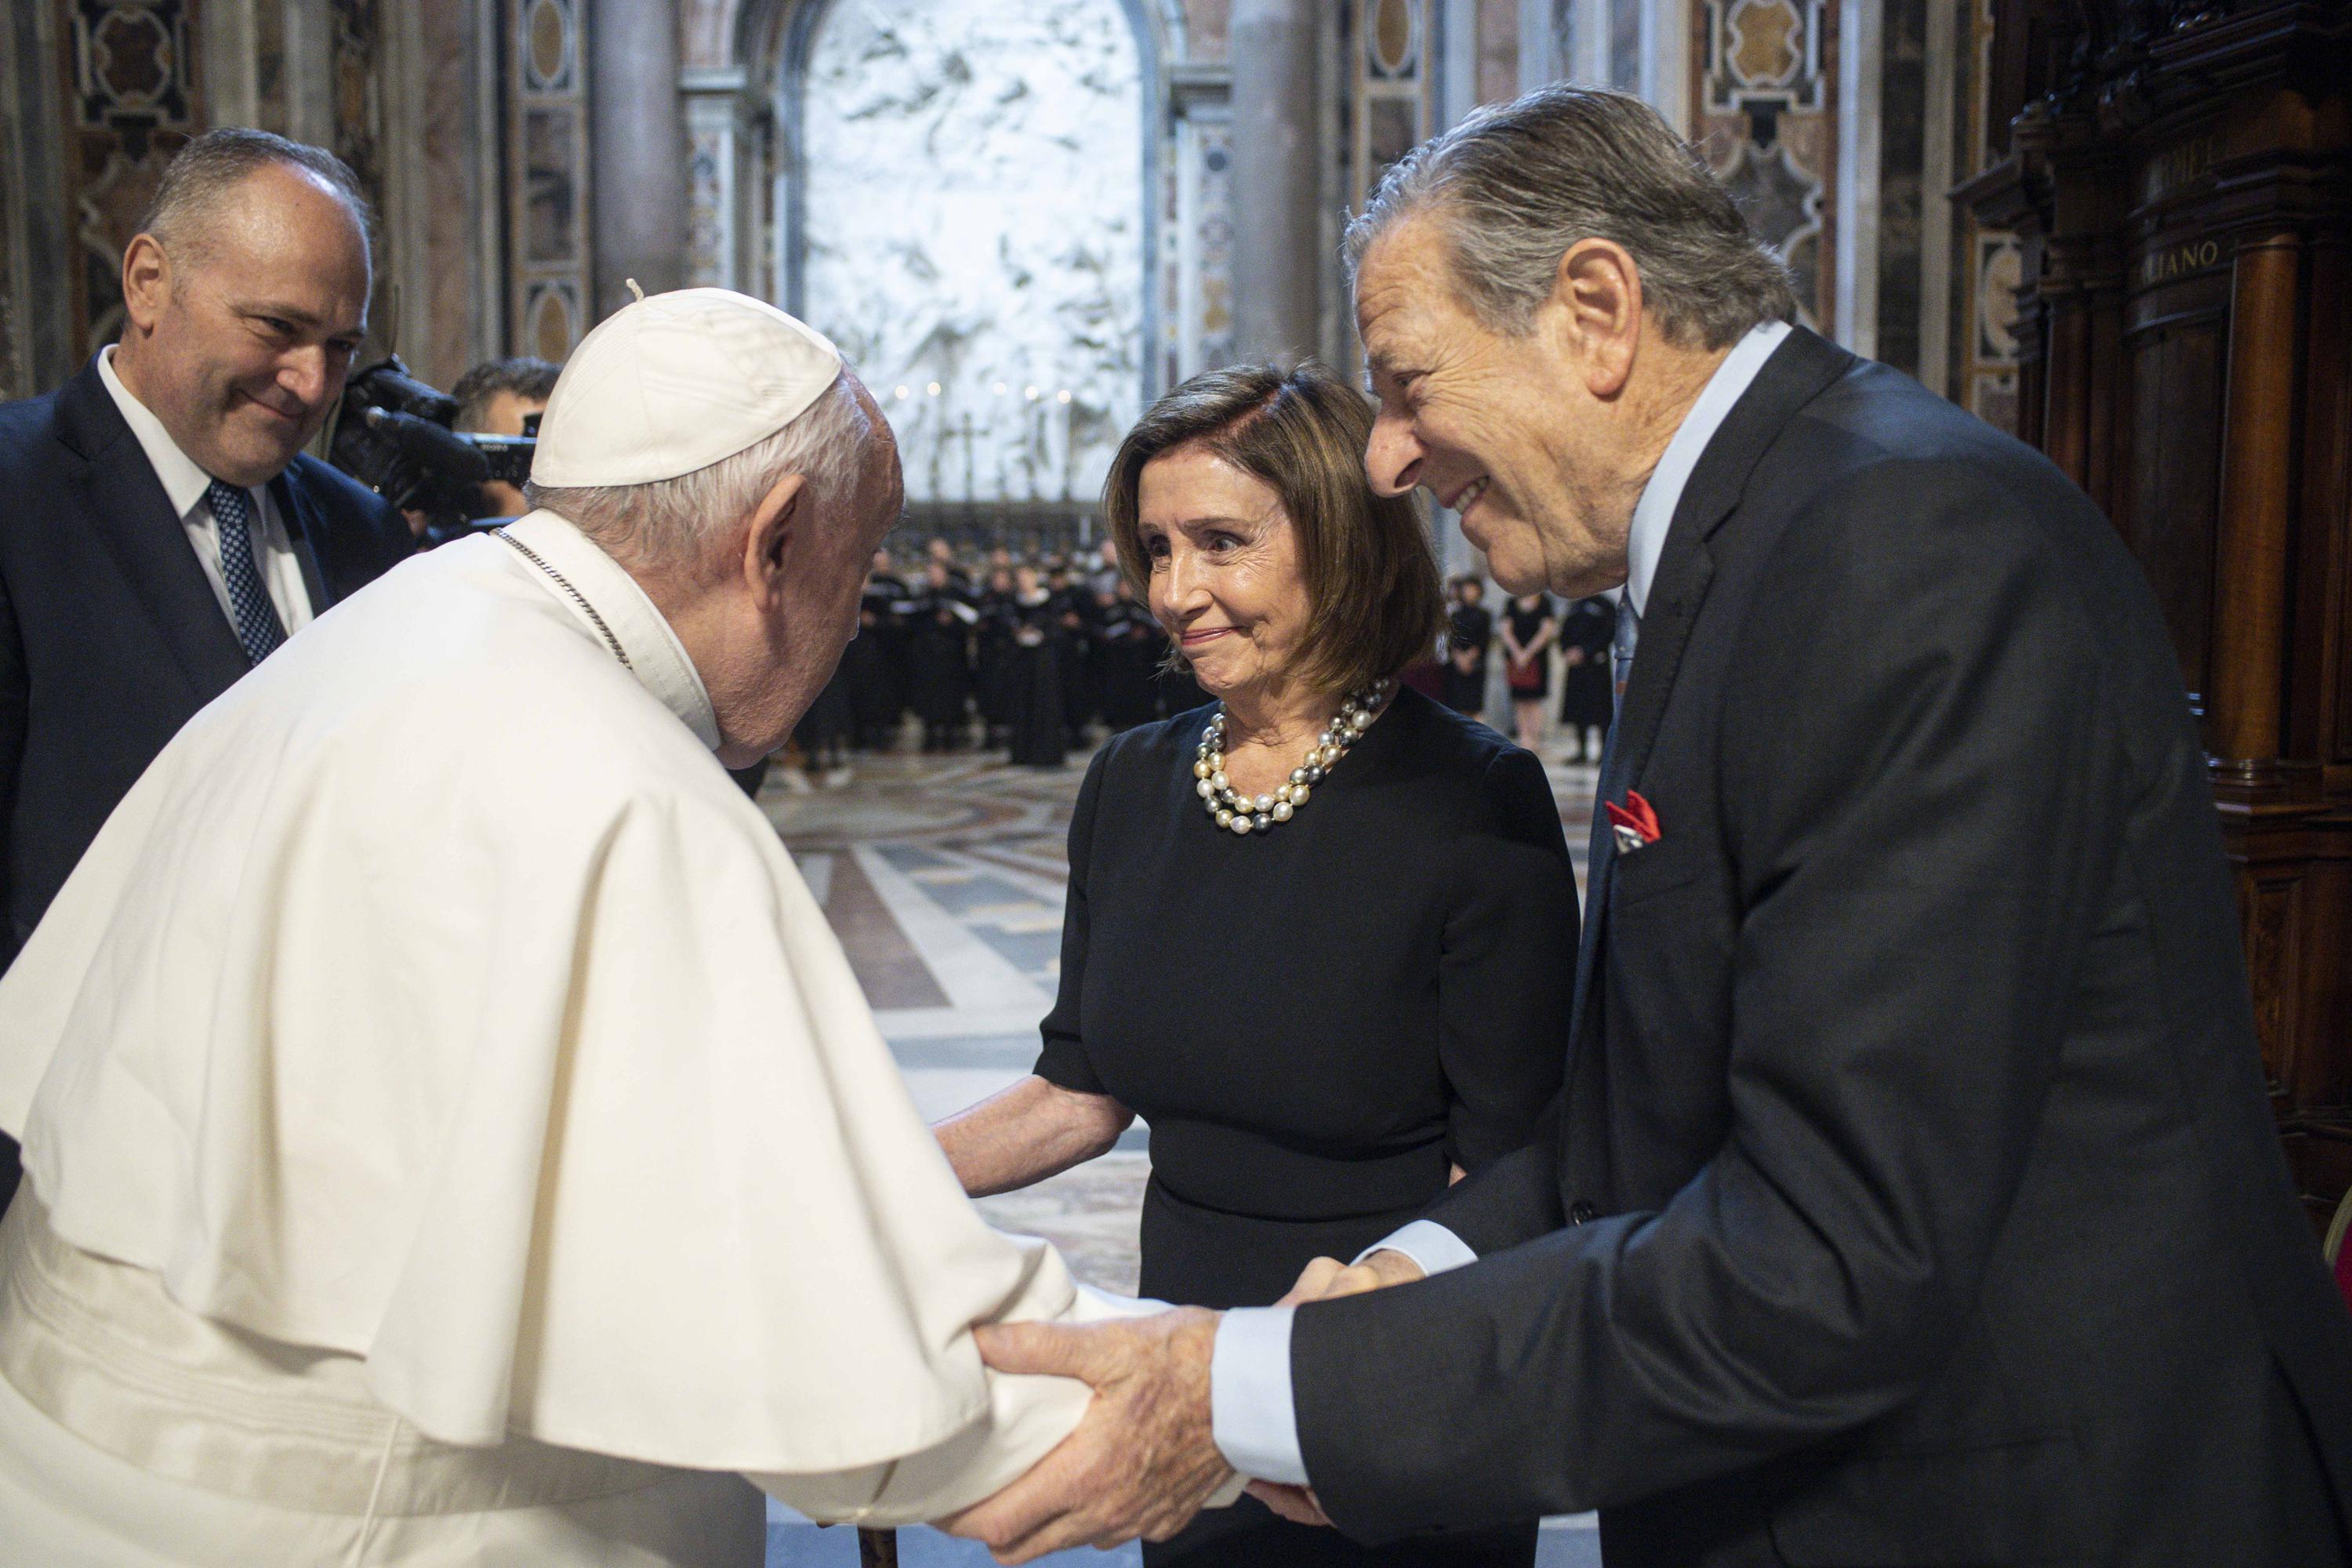 Underholde hval Mælkehvid Pelosi receives Communion in Vatican amid abortion debate | AP News